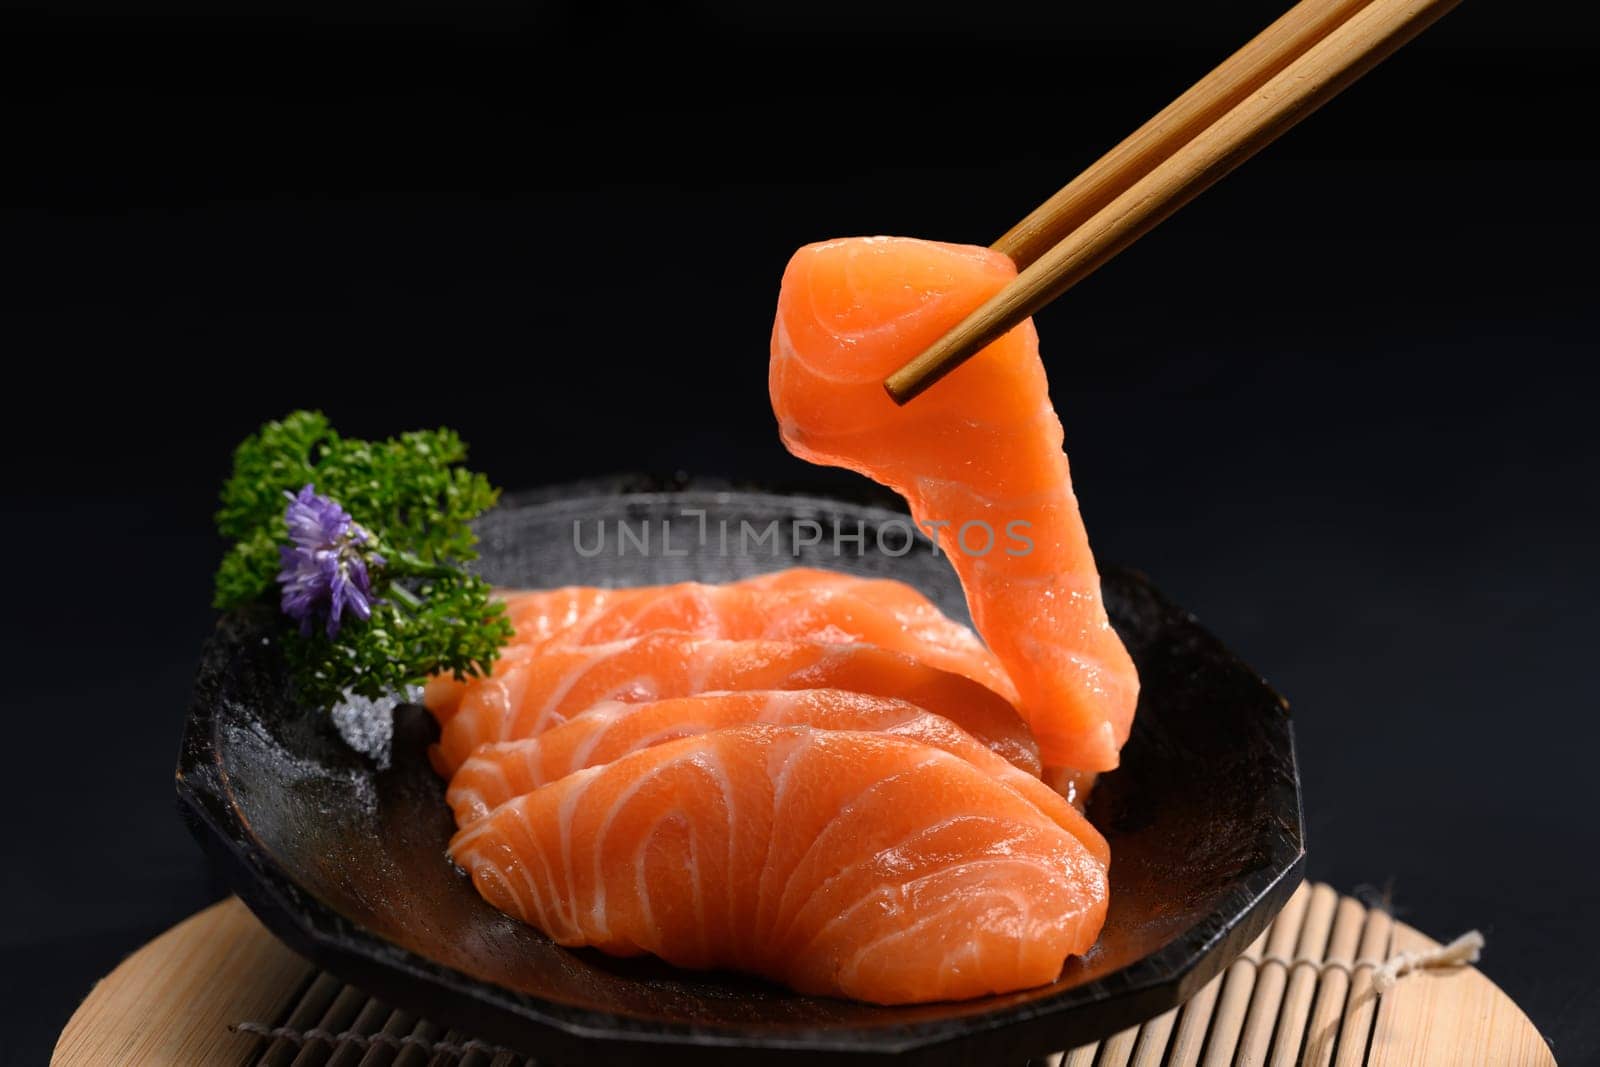 Japanese food, Salmon sashimi with parsley leaf on black plate.